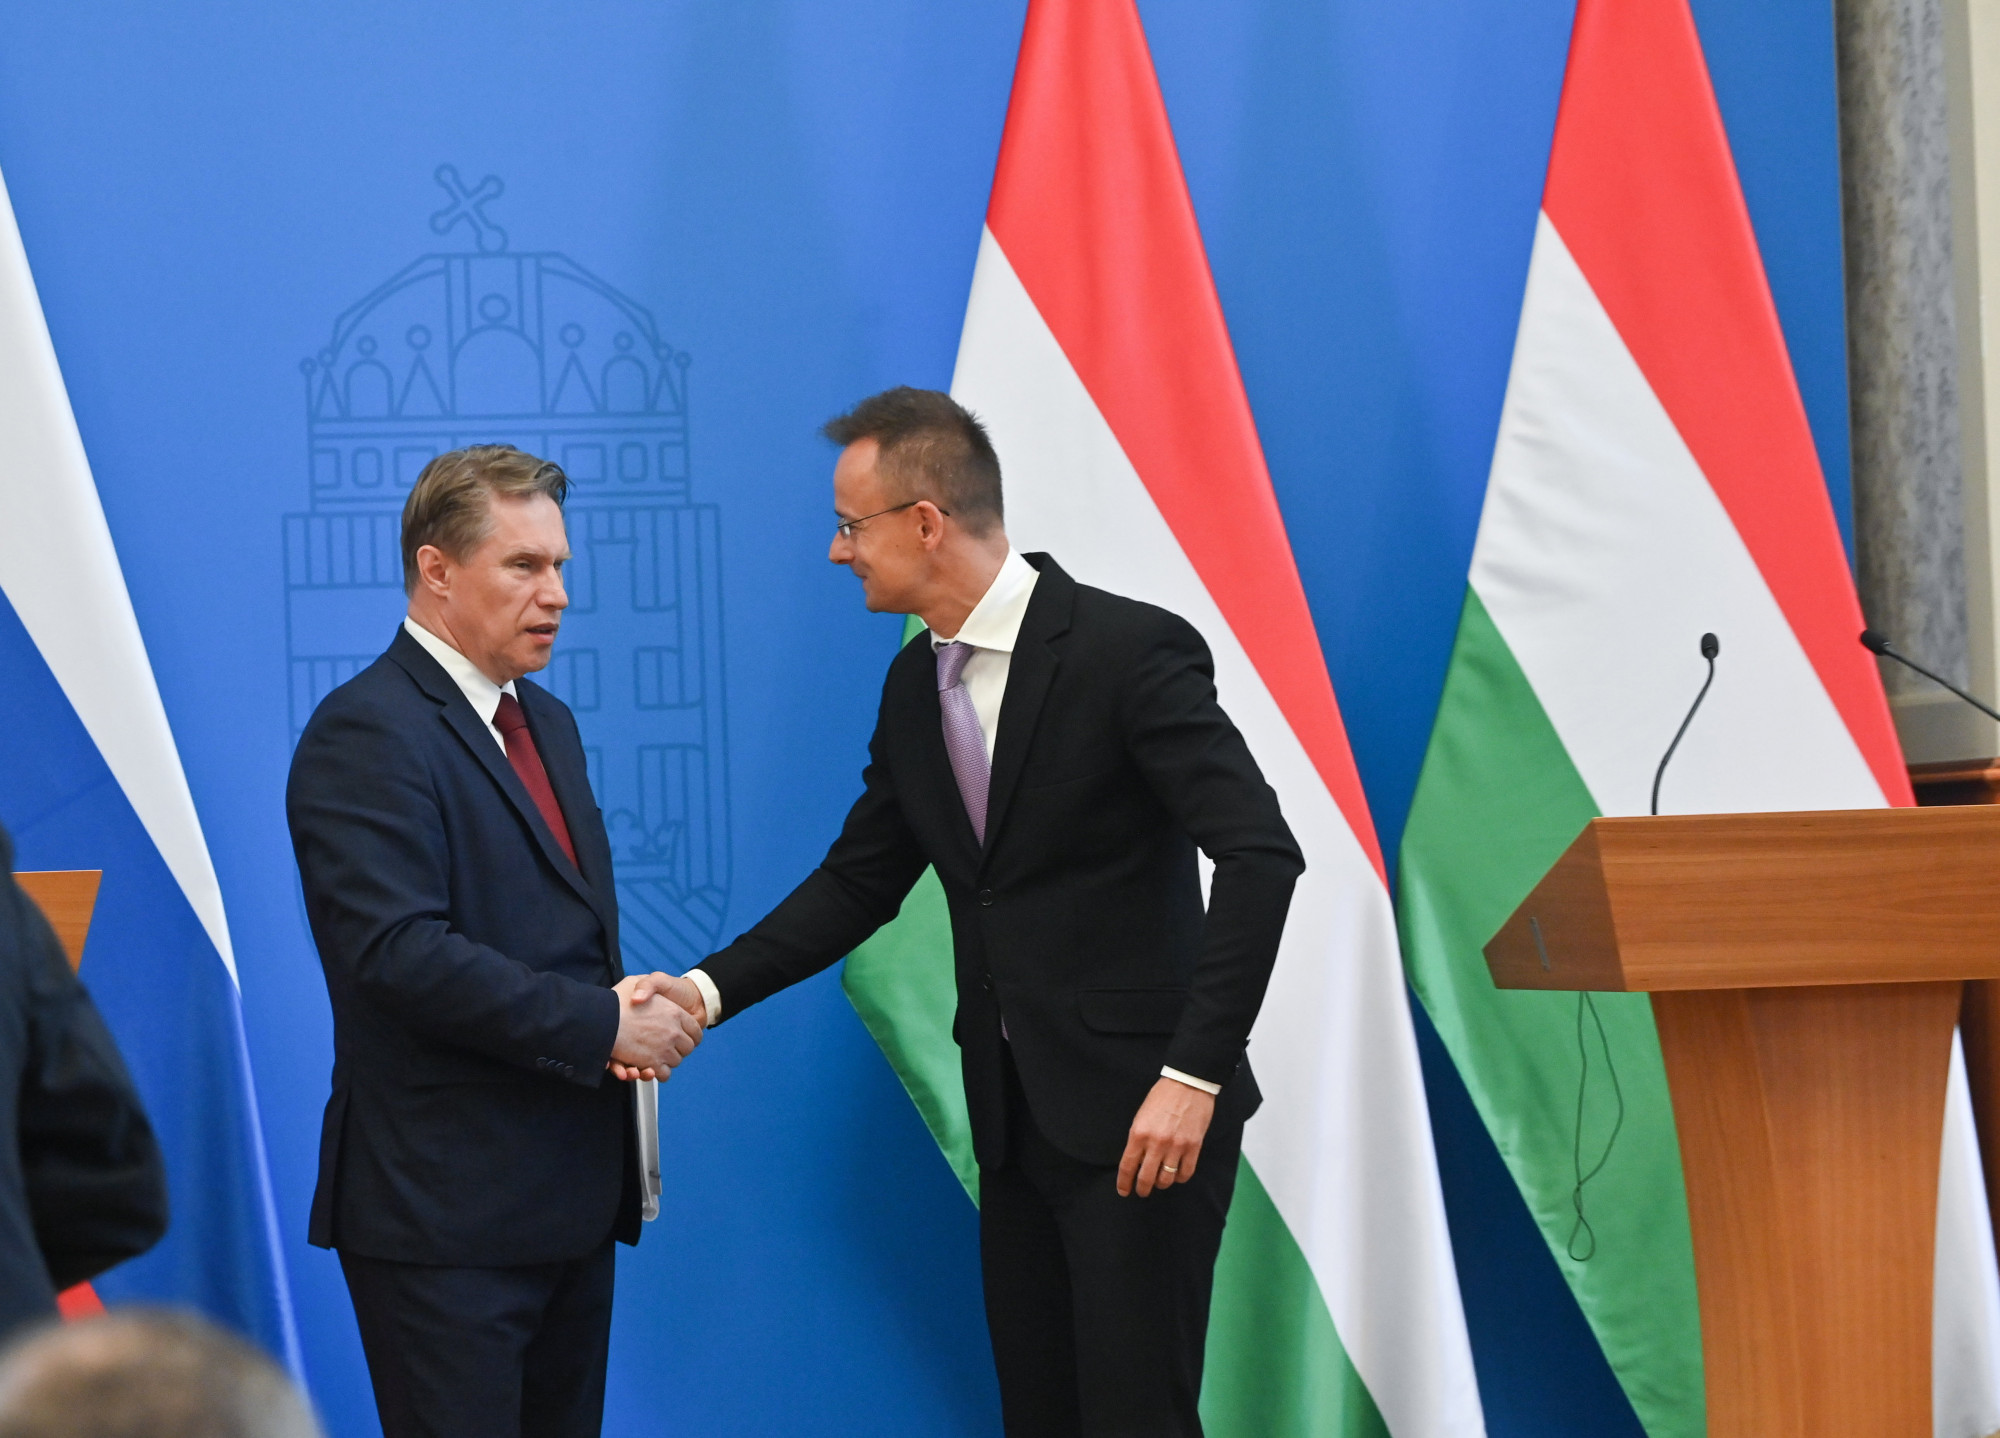 Orosz miniszter Budapesten: A magyar kormány politikája józan, az együttműködésünk baráti